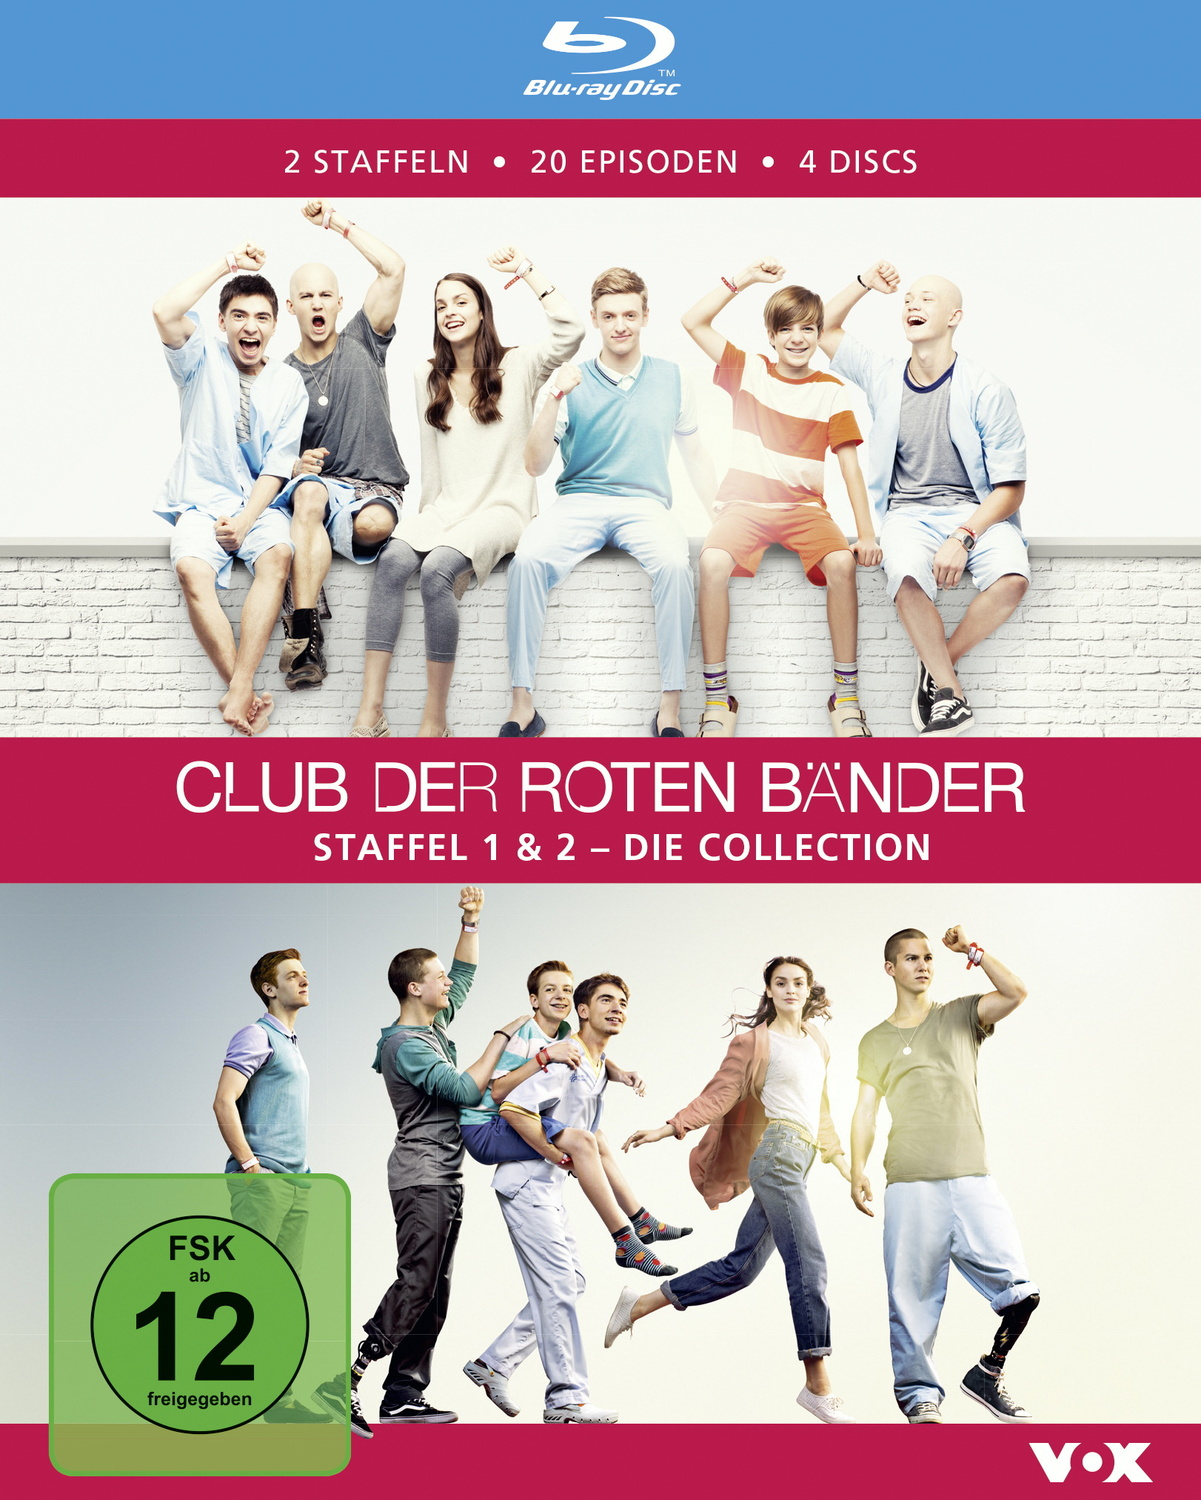 Bänder, Discs) roten Club Blu-ray Die Collection - 1 & 2 (4 der Staffel